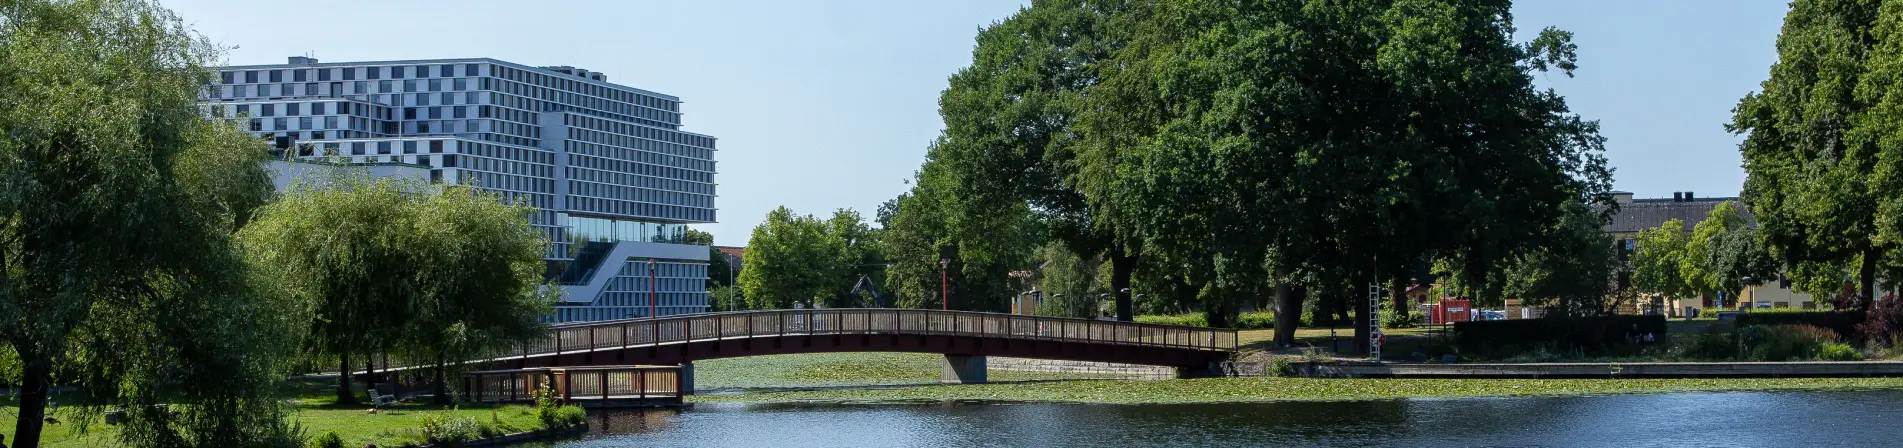 En panoramabild av en urban parkmiljö med en bred flod i förgrunden och en träbro som korsar den. På andra sidan floden finns gröna träd och en stor modern byggnad med många fönster som dominerar bakgrunden. Bilden fångar en harmonisk samexistens mellan naturliga och urbaniserade element under en klarblå himmel.